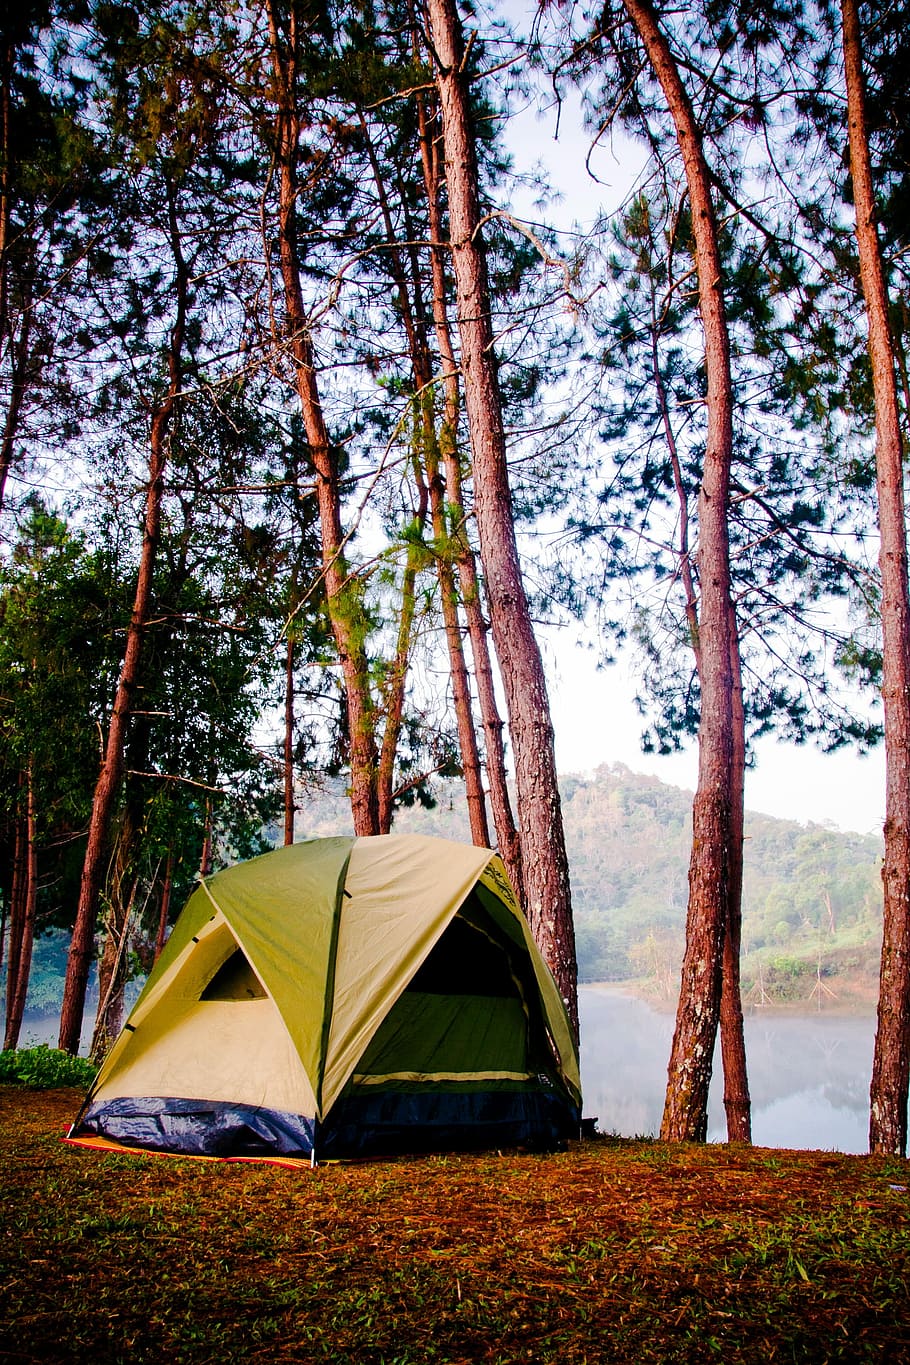 amarelo, azul, barraca, floresta, amarelo e azul, acampamento, natureza, aventura, ao ar livre, árvore